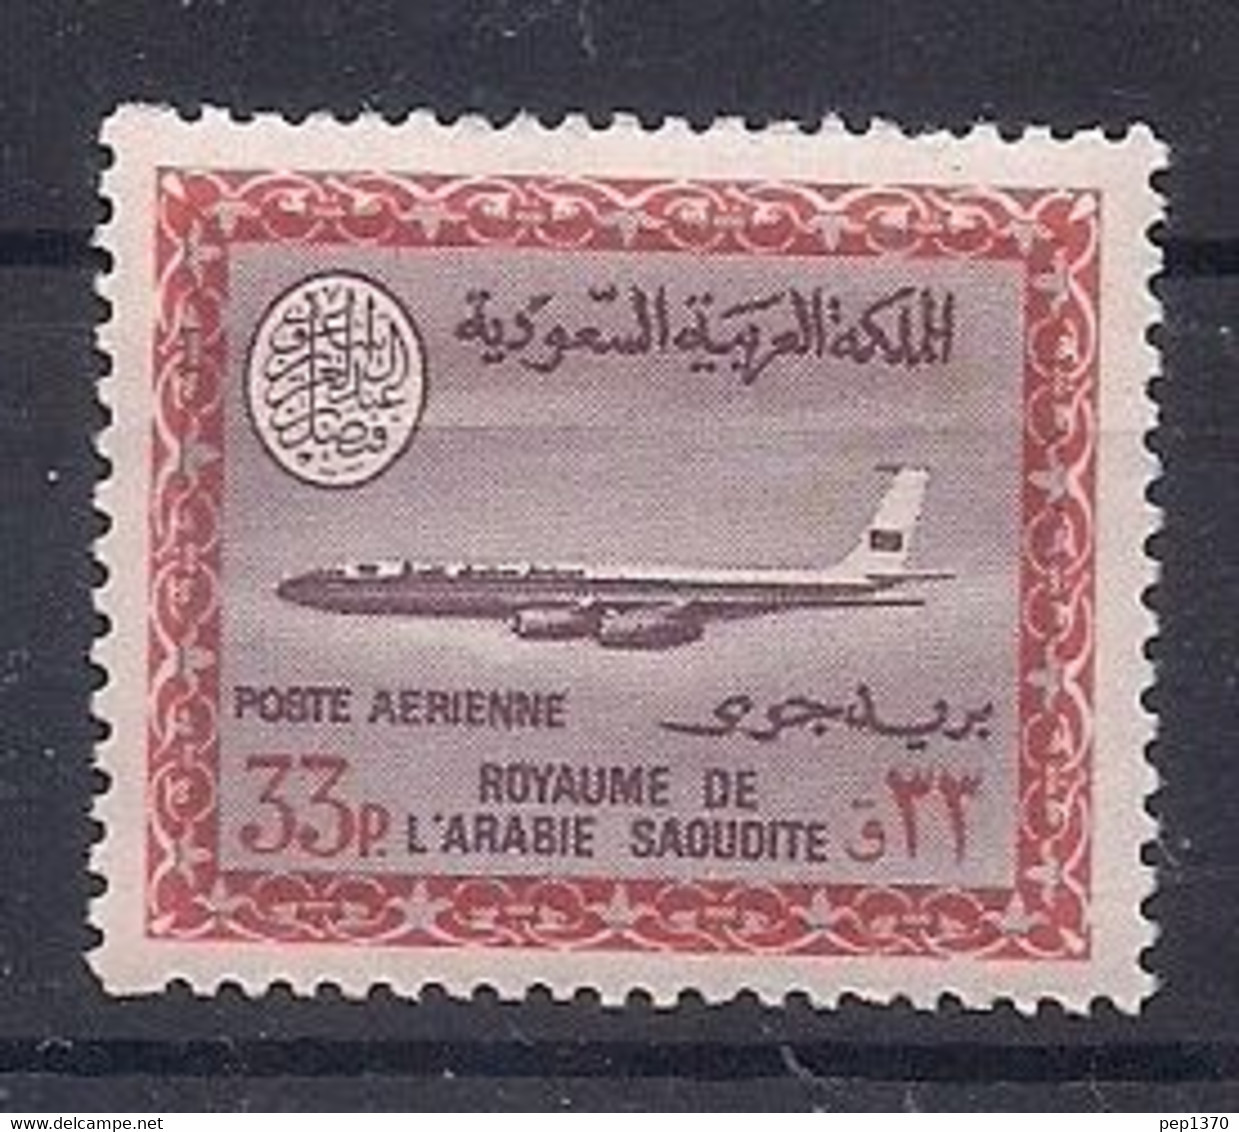 ARABIA SAUDITA 1966-1975 - ARABIE SAUDI - AVION BOEING 720B - YVERT PA Nº 79** - Saudi Arabia